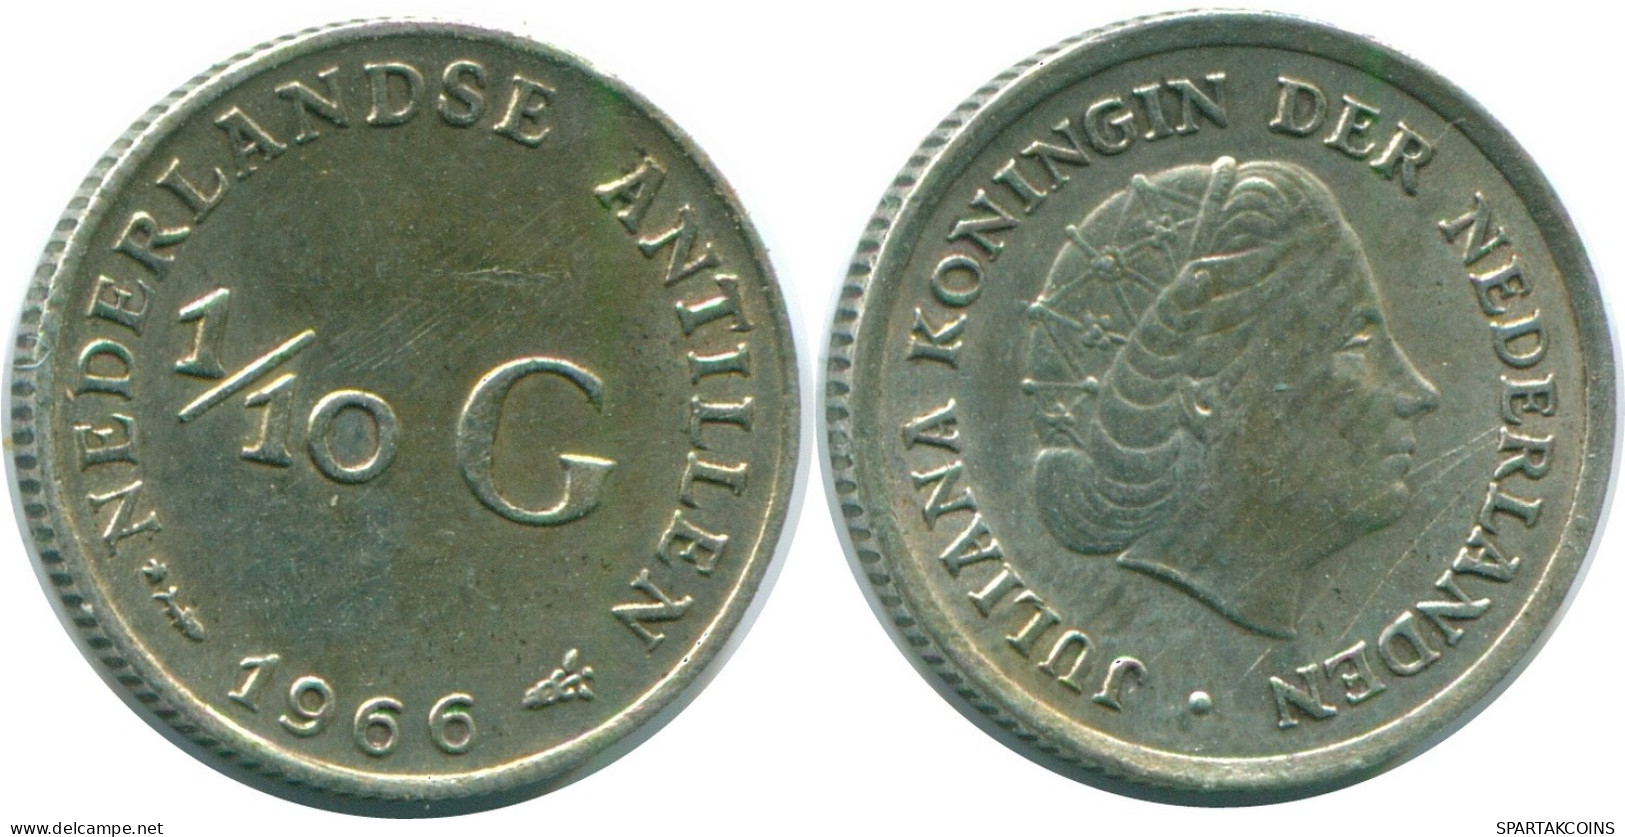 1/10 GULDEN 1966 NIEDERLÄNDISCHE ANTILLEN SILBER Koloniale Münze #NL12768.3.D.A - Nederlandse Antillen